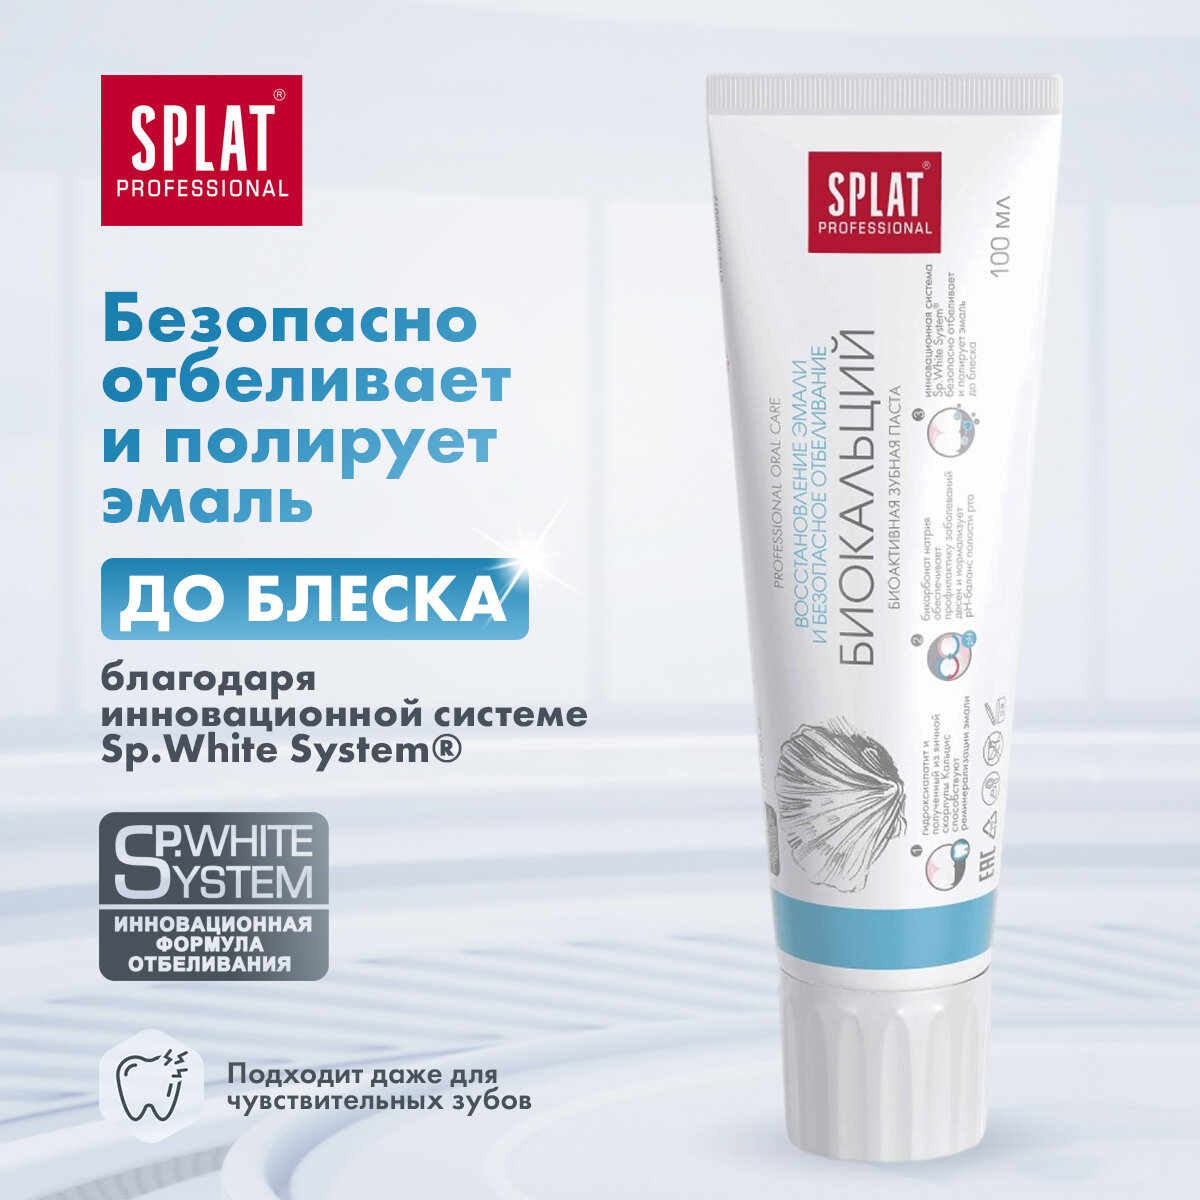 Зубная паста Splat Professional Биокальций с гидроксиапатитом, для укрепления и безопасного отбеливания эмали, набор 1+1, 100 мл х 2 шт